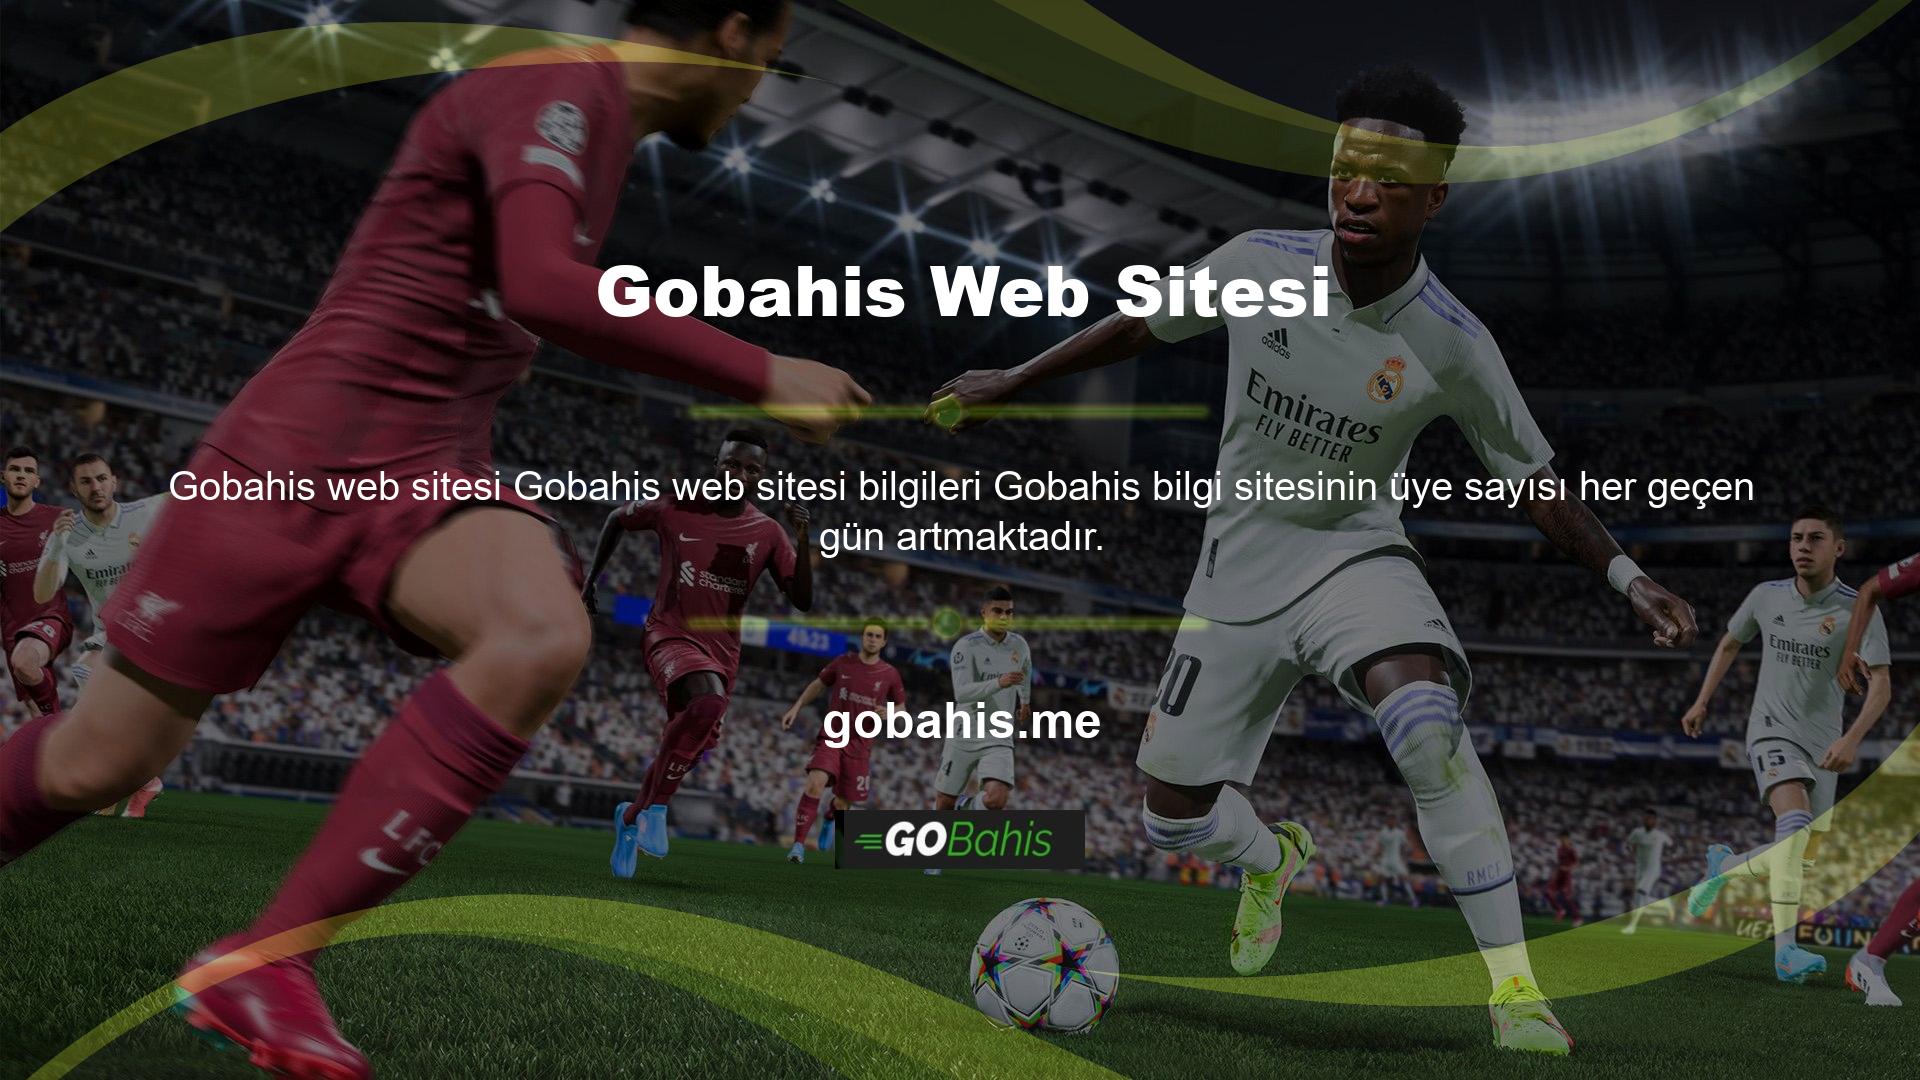 Ayrıca sitenin içeriği sürekli olarak genişletilmekte ve site güncellendikçe Gobahis sitesine yeni oyunlar eklenmektedir